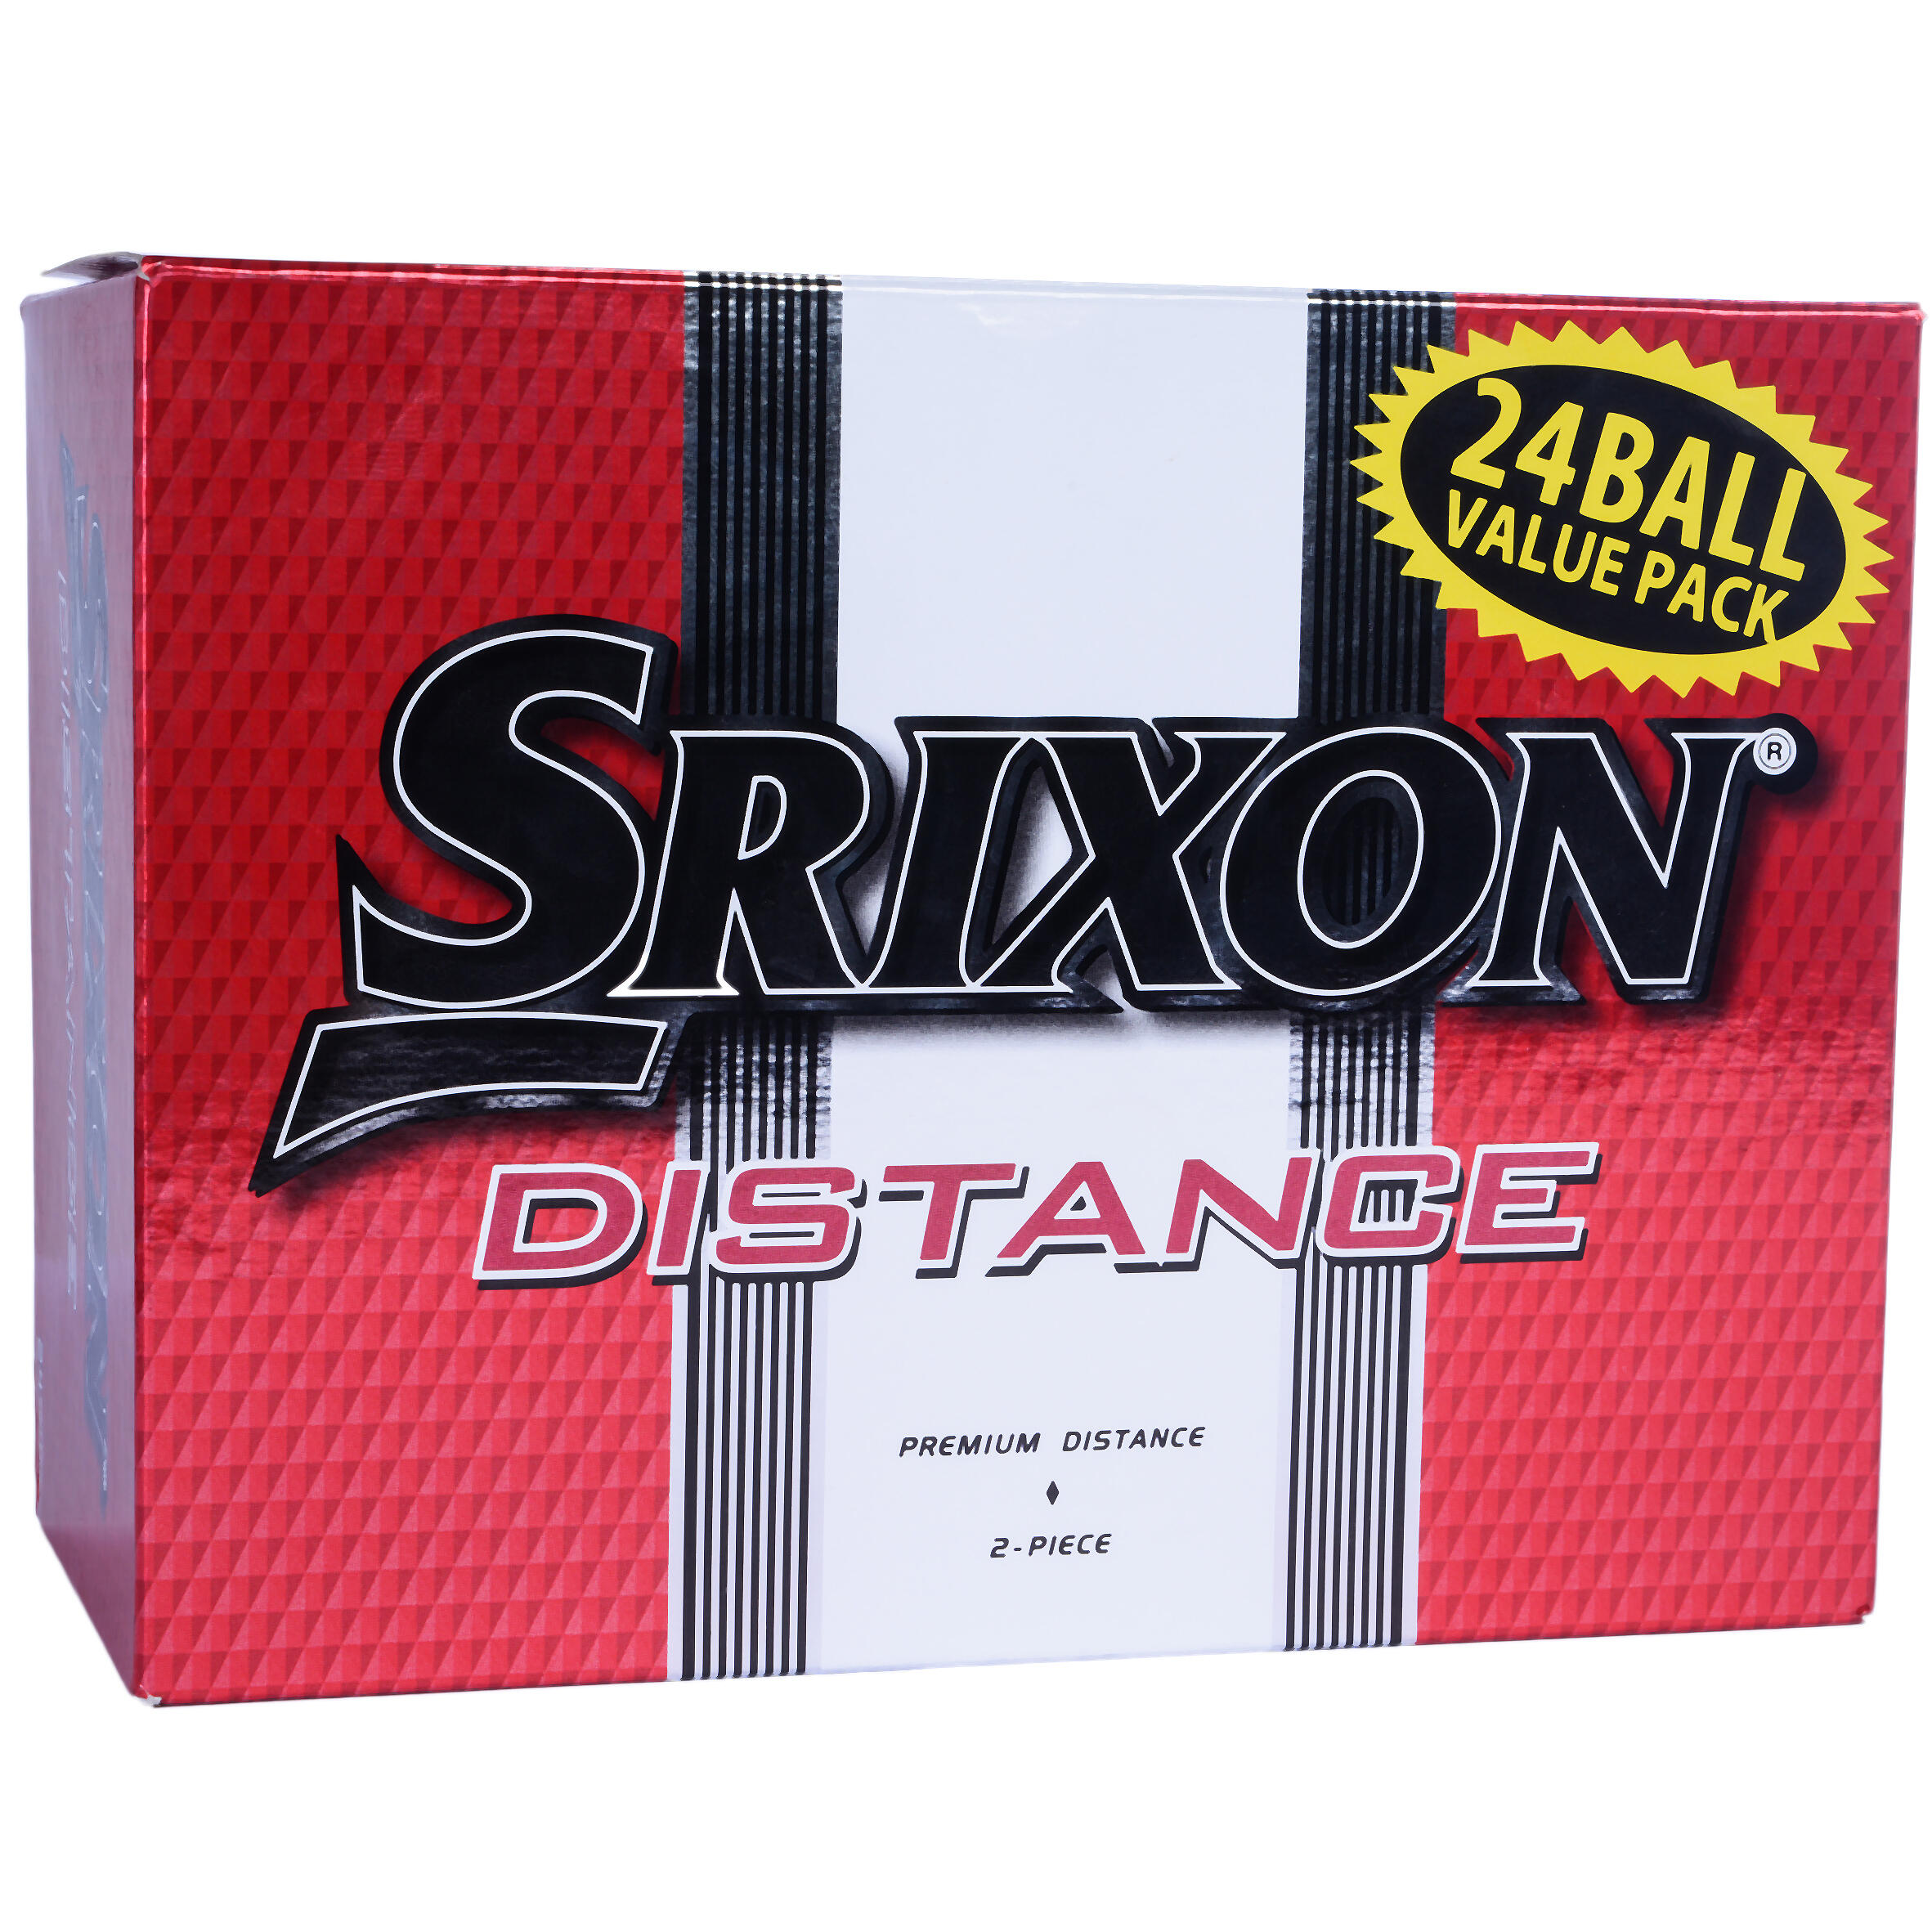 SRIXON GOLF BALLS BIPACK X24 - SRIXON DISTANCE WHITE